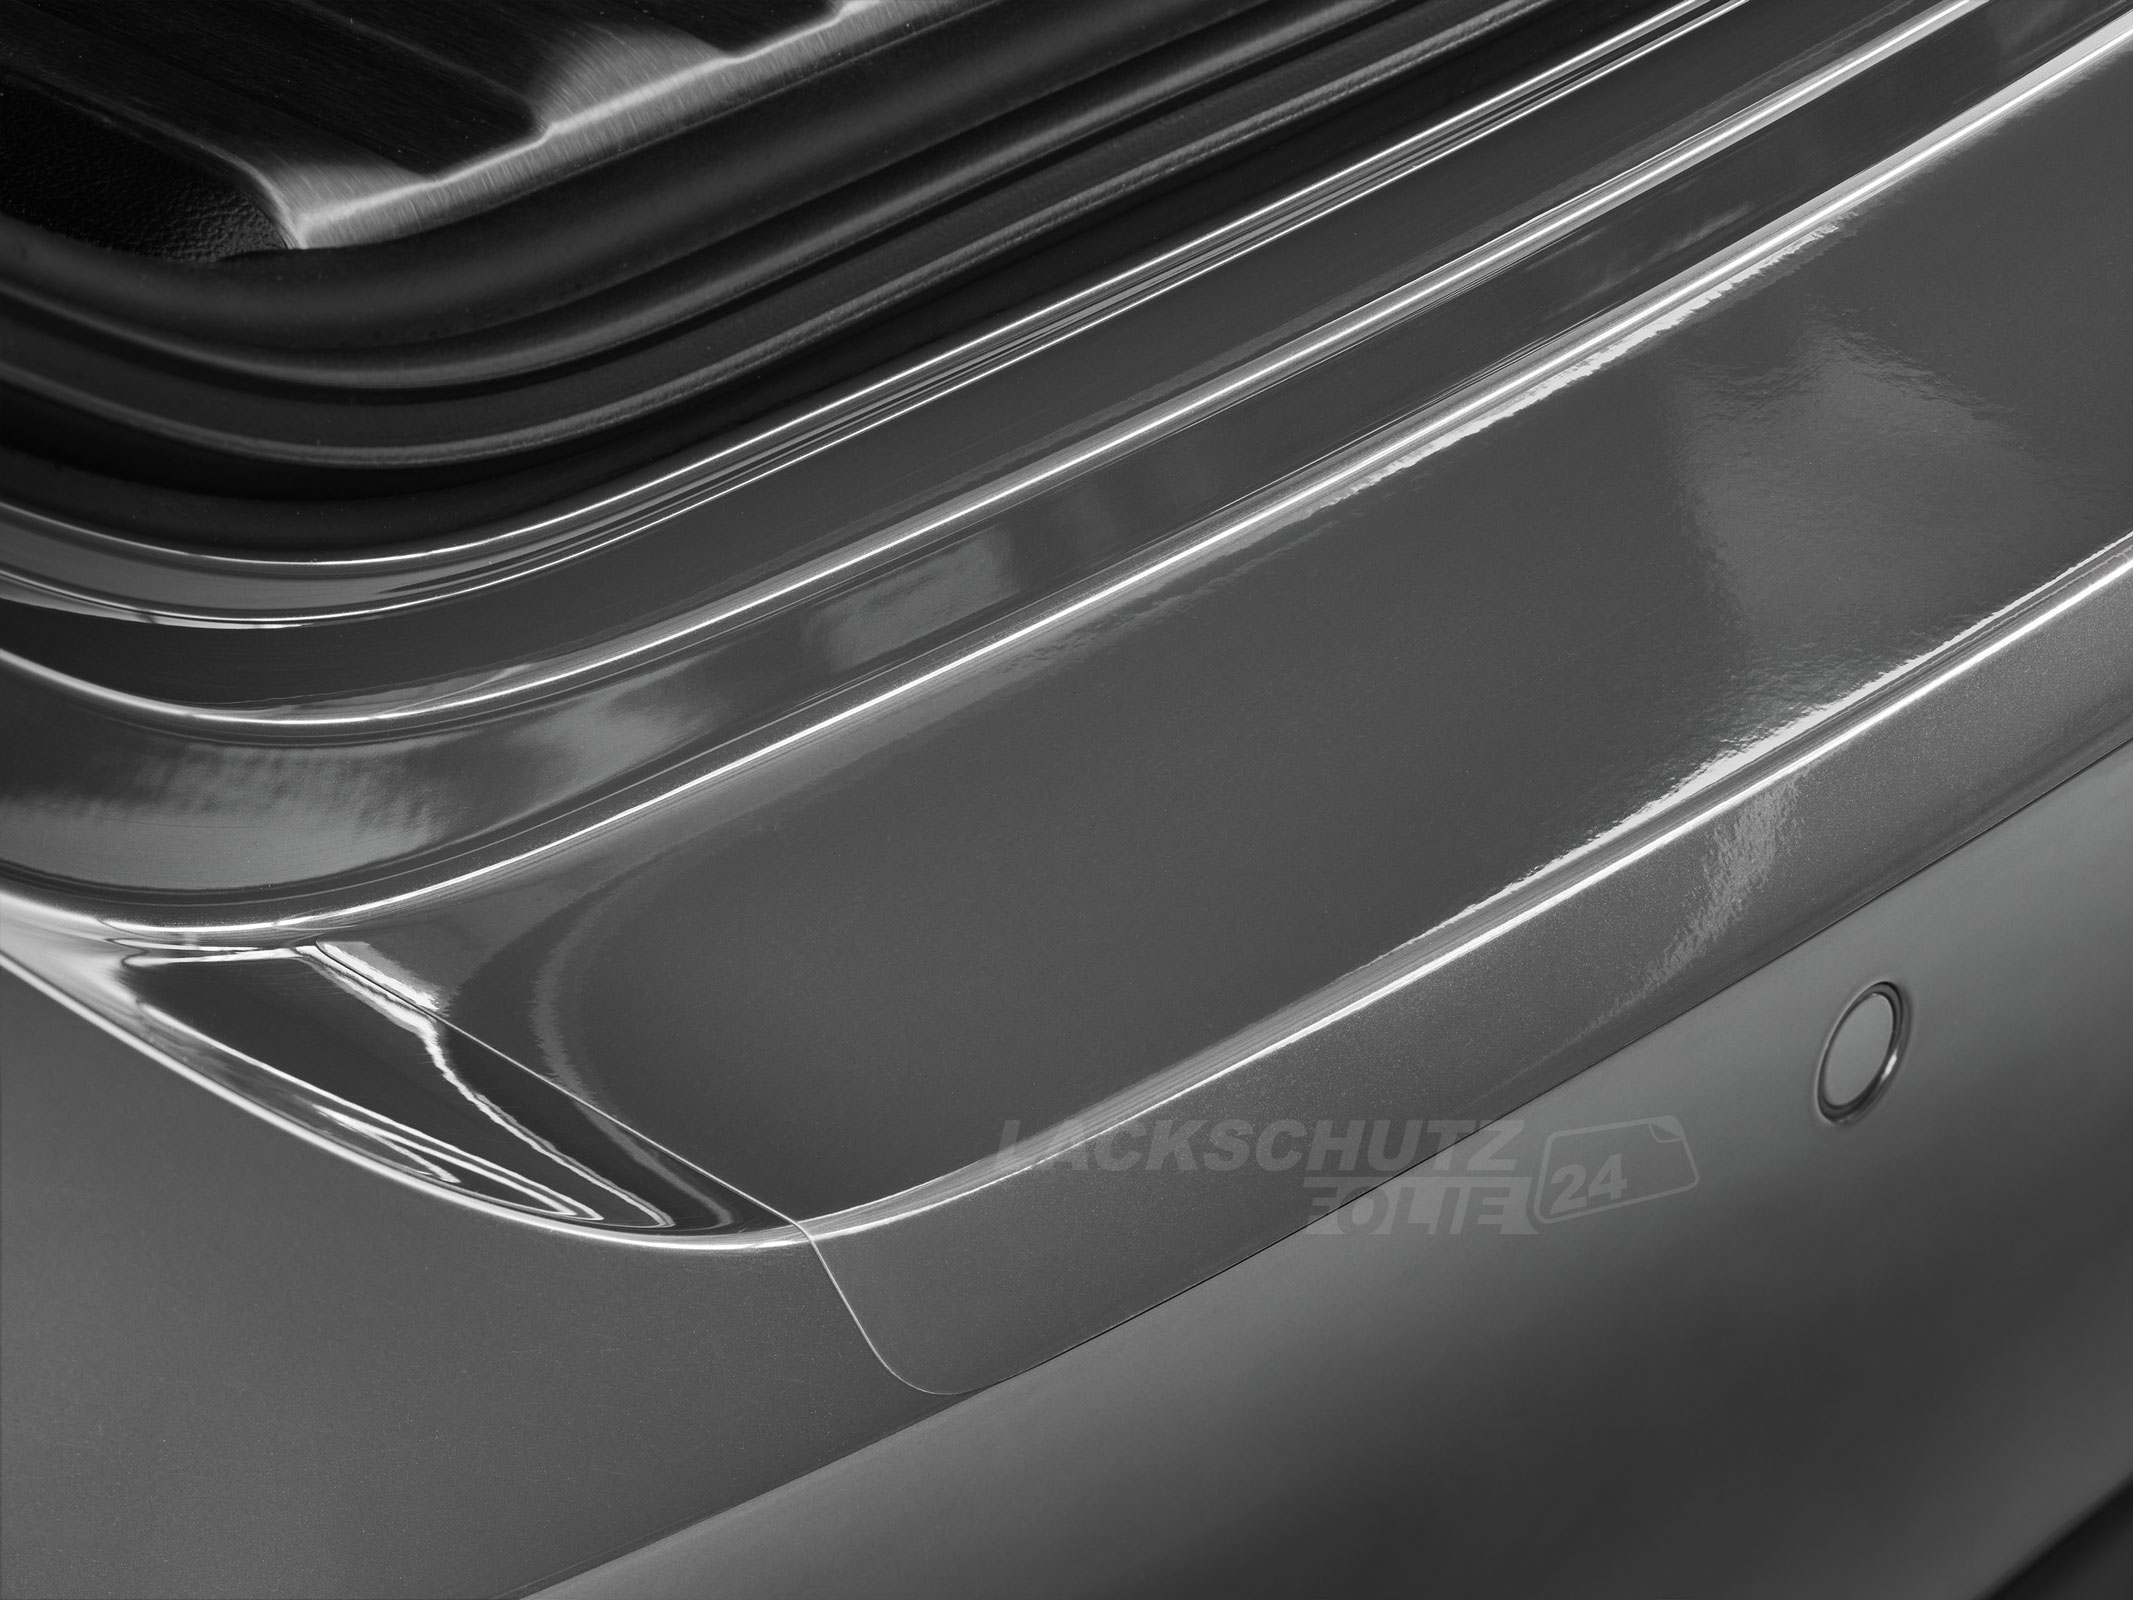 Ladekantenschutzfolie - Transparent Glatt Hochglänzend 150 µm stark für VW / Volkswagen Passat Variant (Kombi) B6, Typ 3C, BJ 2005-2010